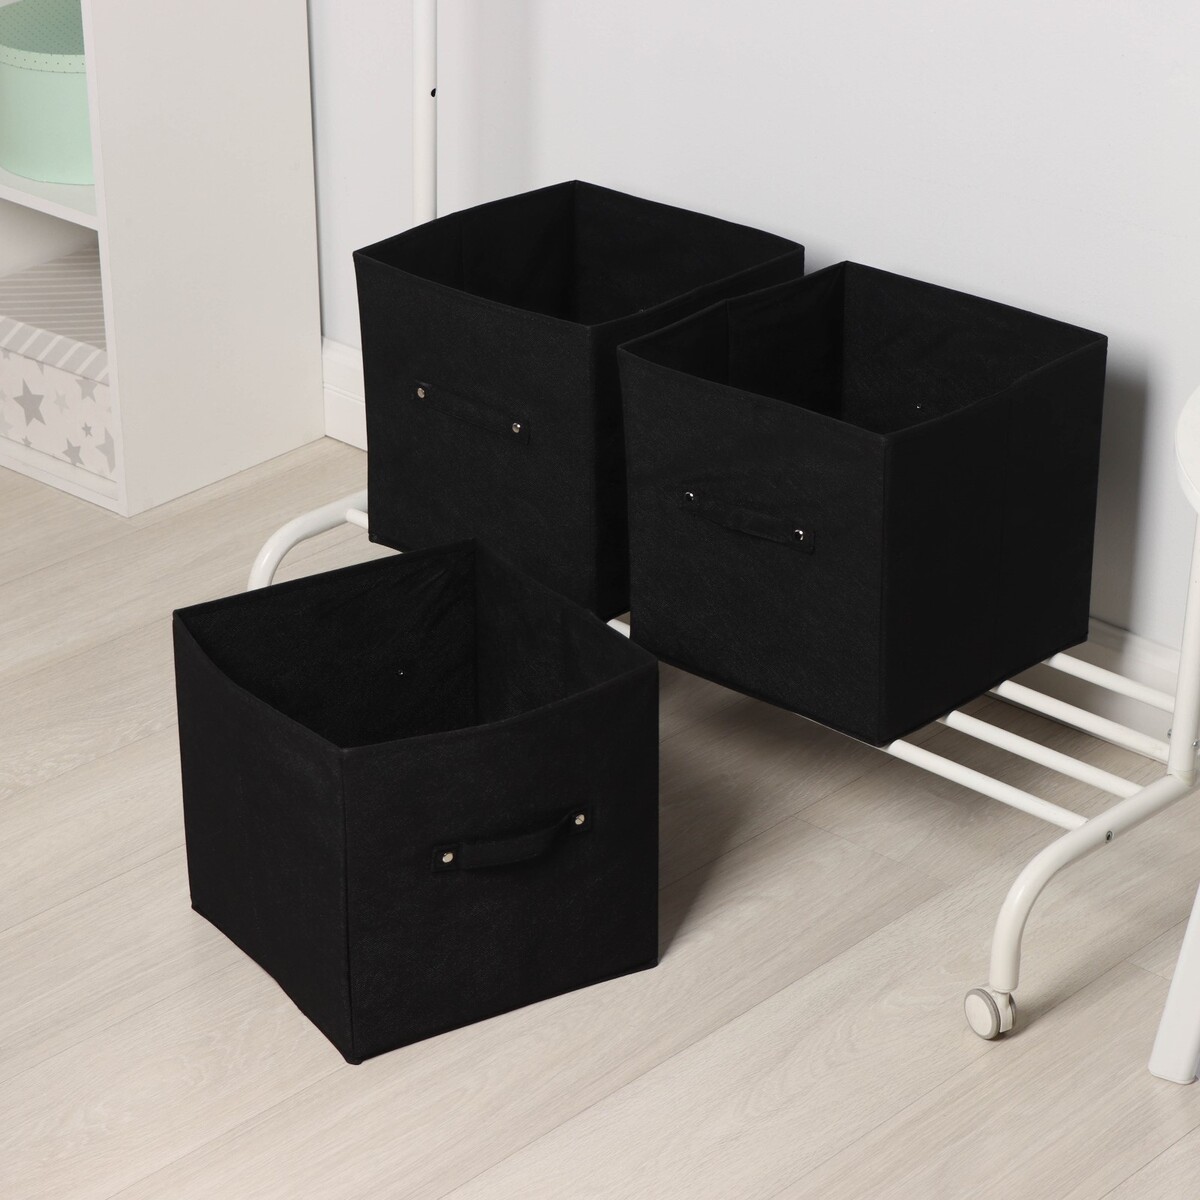 Короба для хранения вещей складные, без крышек, набор из 3 шт, 31×31×31 см, цвет черный короба для хранения вещей складные без крышек набор из 3 шт 31×31×31 см